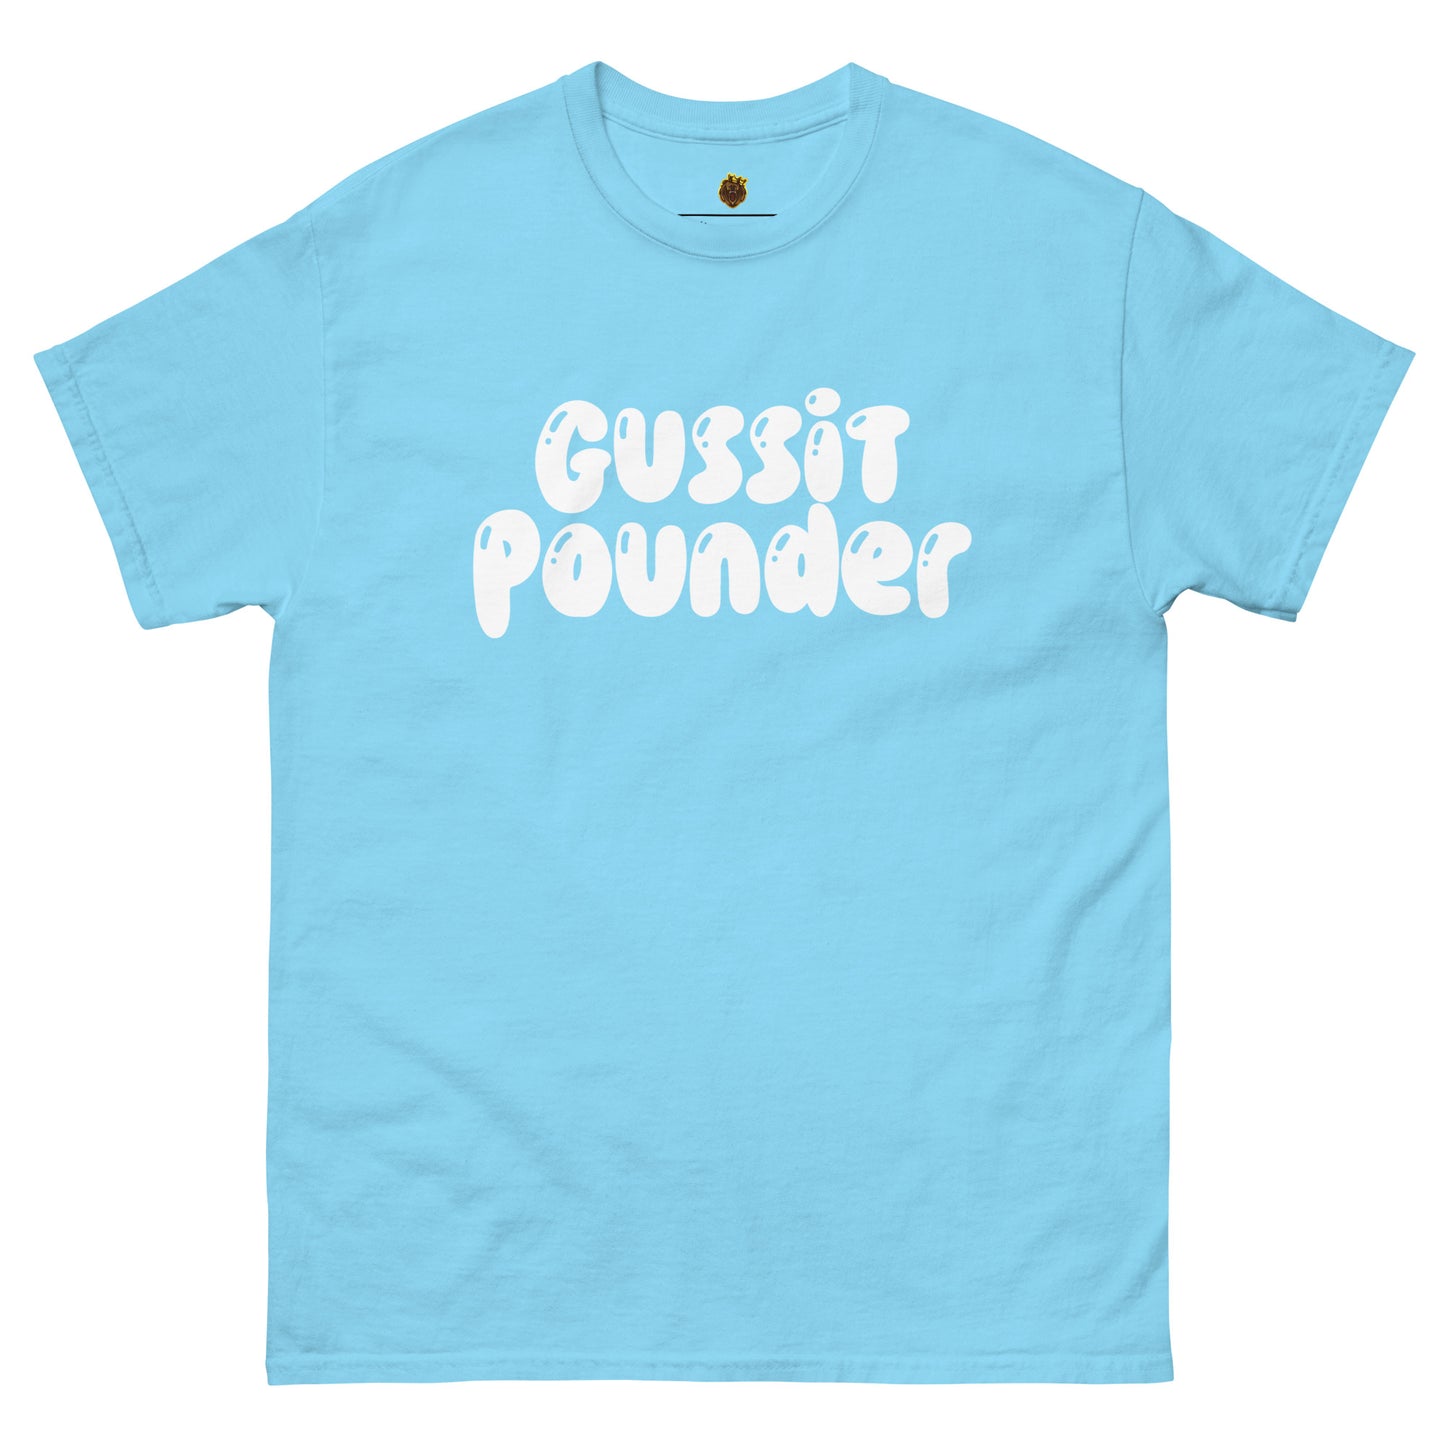 Gussit Pounder